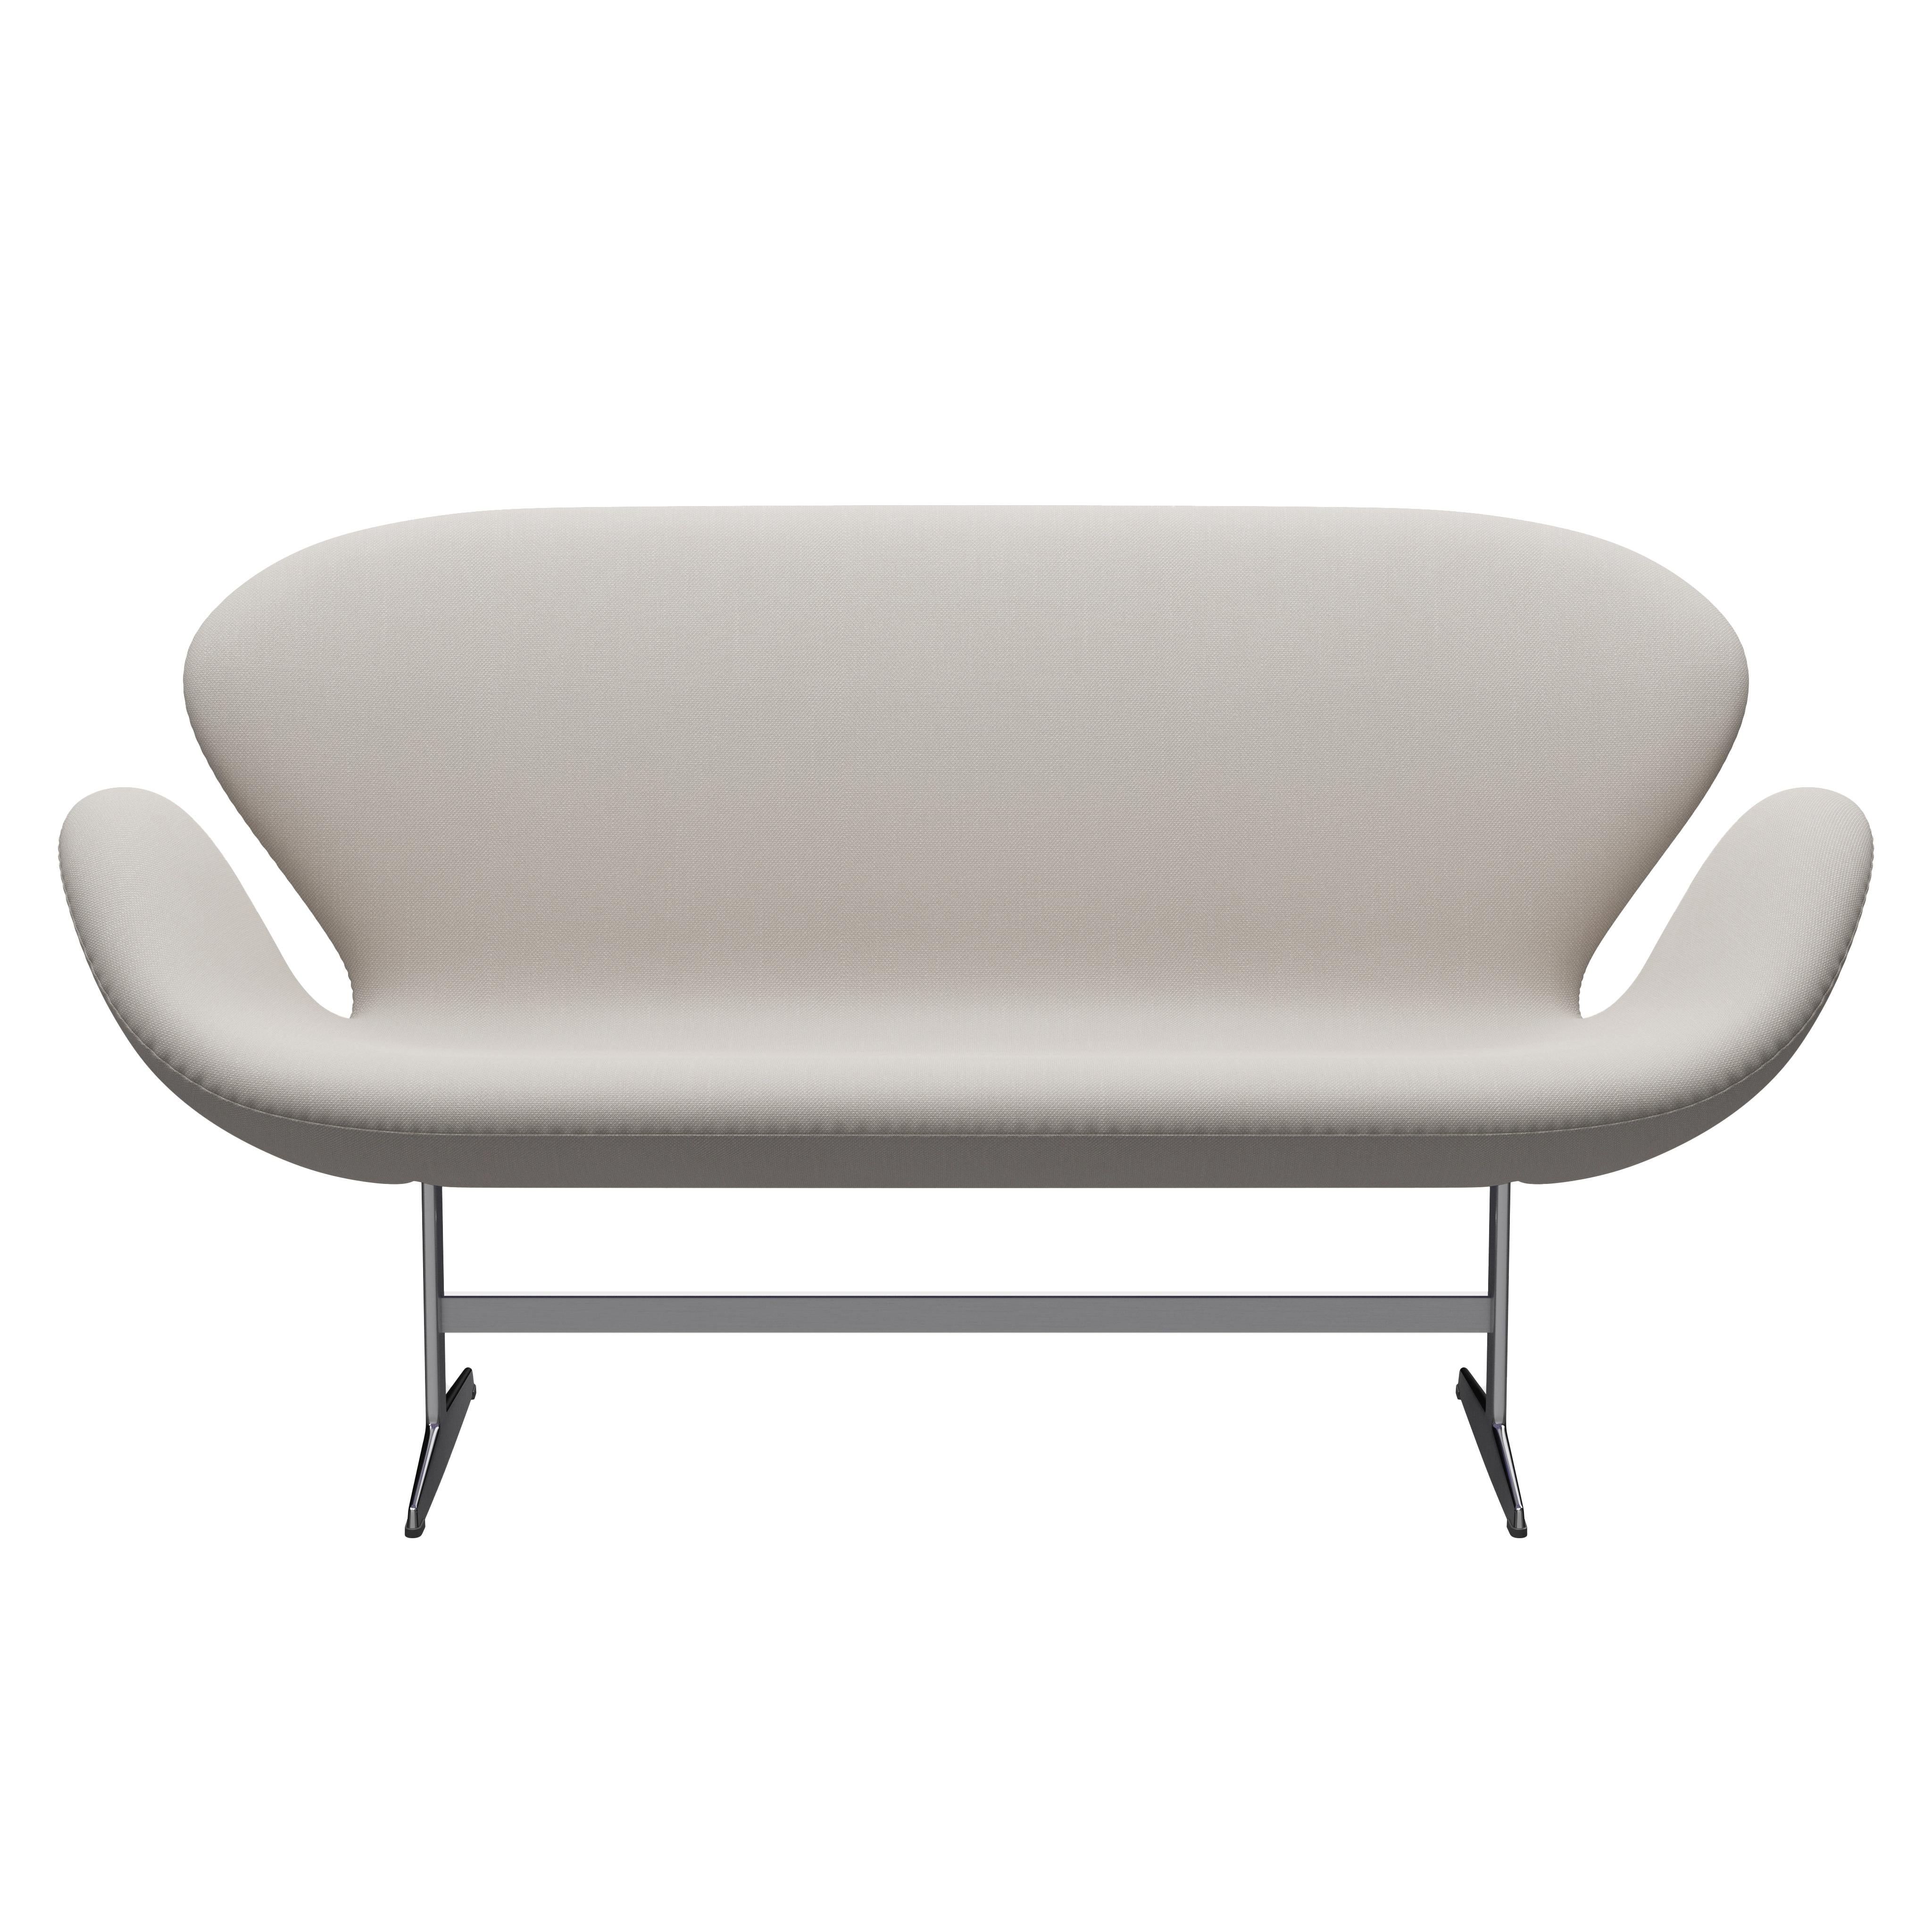 Arne Jacobsen 'Swan' Sofa for Fritz Hansen in Fabric Upholstery (Cat. 2) For Sale 2